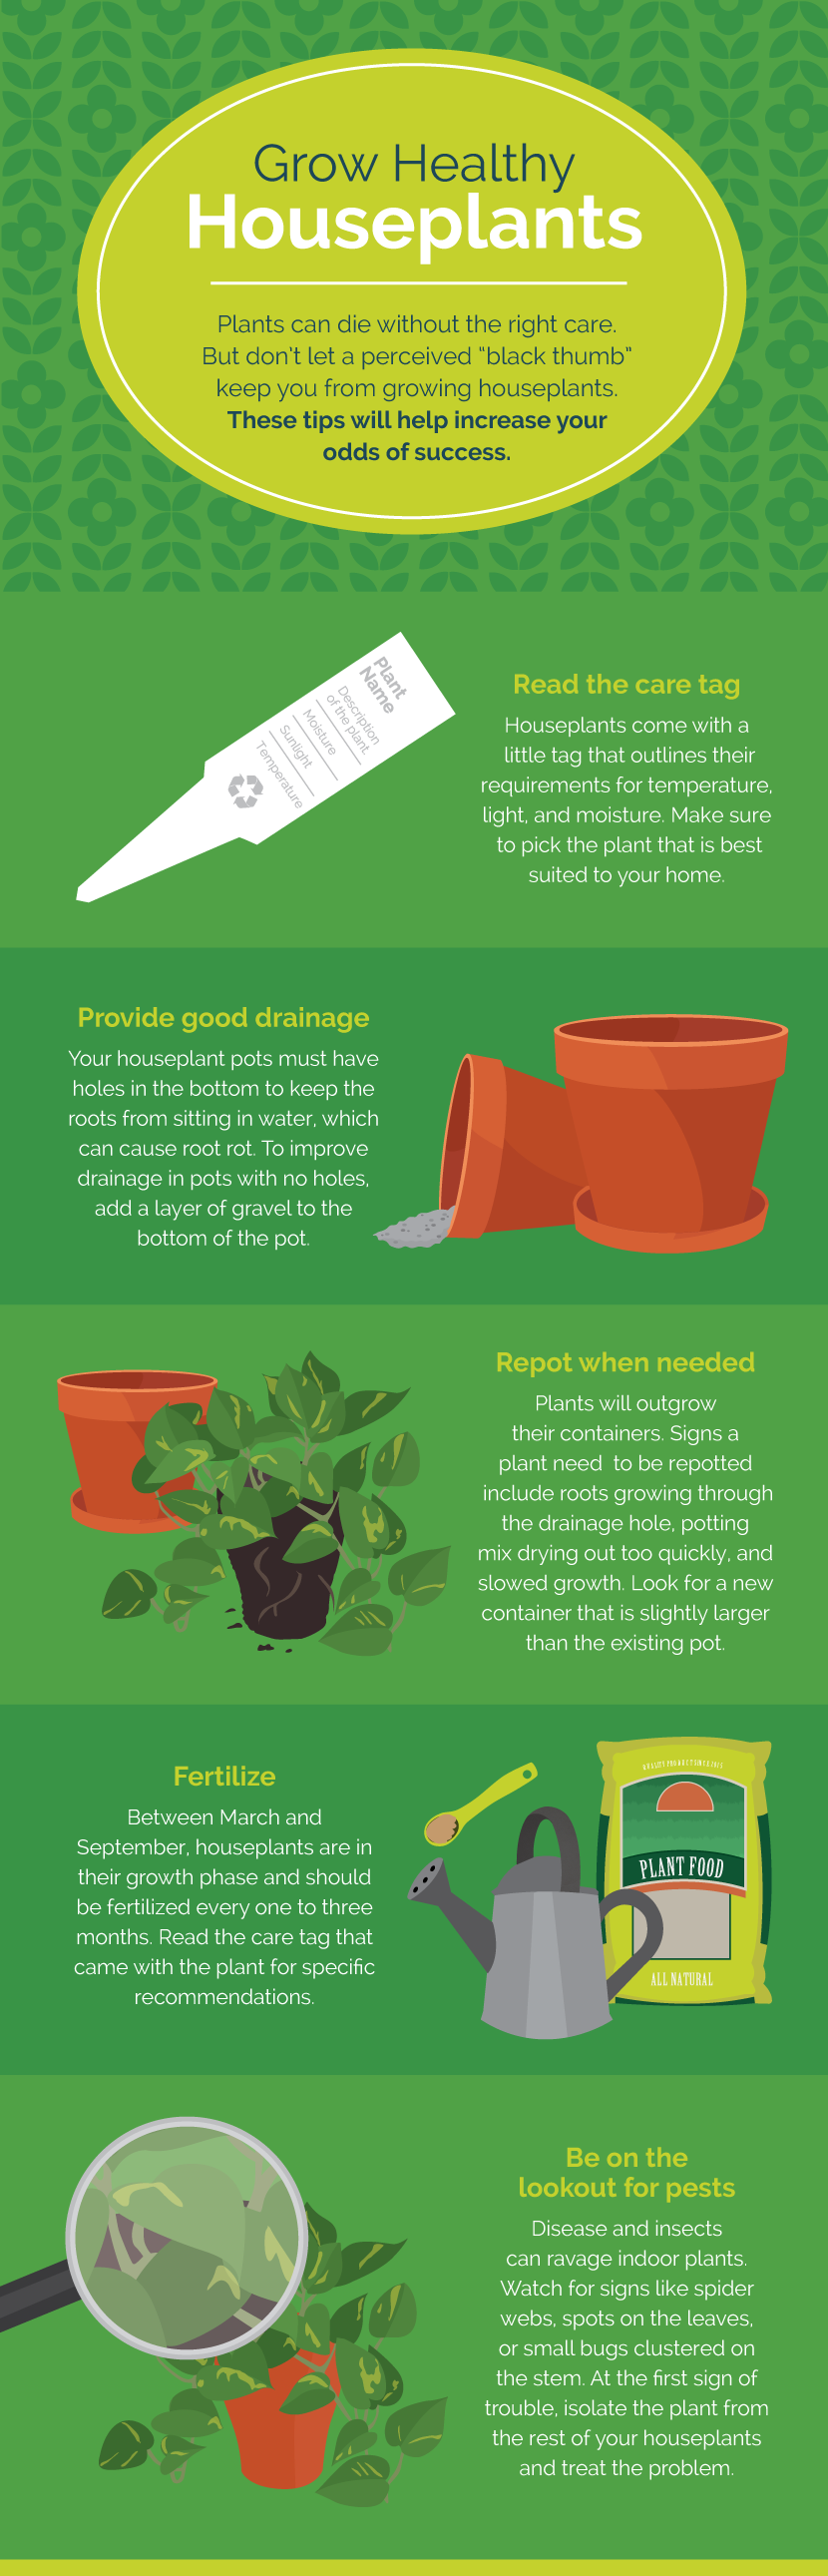 Grow Healthy Houseplants - Indoor Gardening for Mindfulness